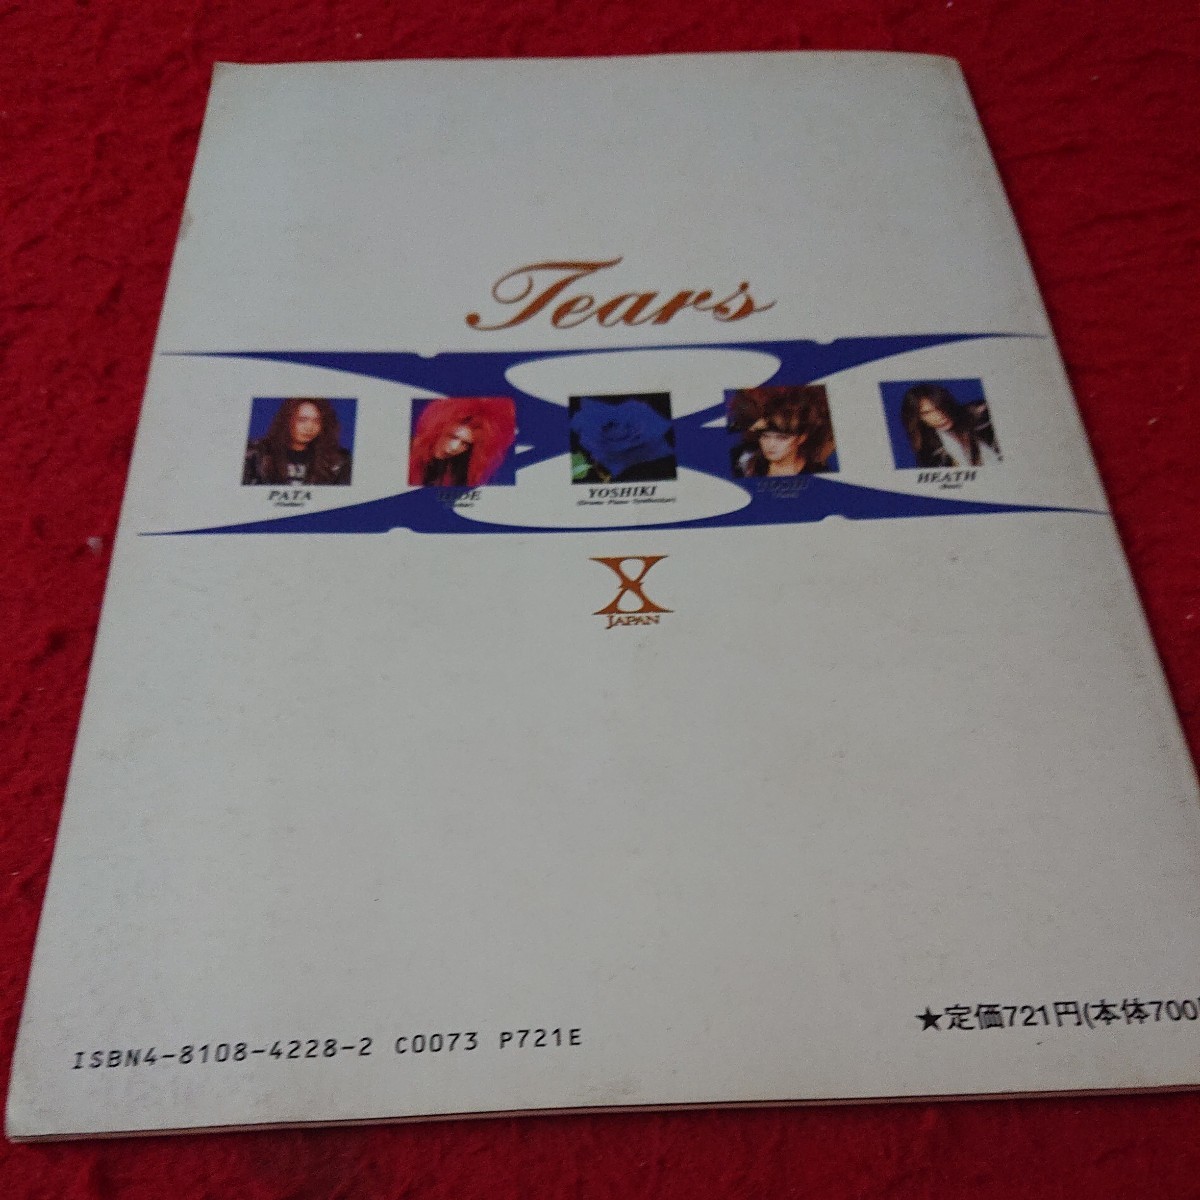 d-620 TBS系ドラマ「憎しみに微笑んで」主題歌 Tears X JAPAN ドレミバンドピース 1994年発行 エクスタシー楽譜出版※6 _傷、汚れあり